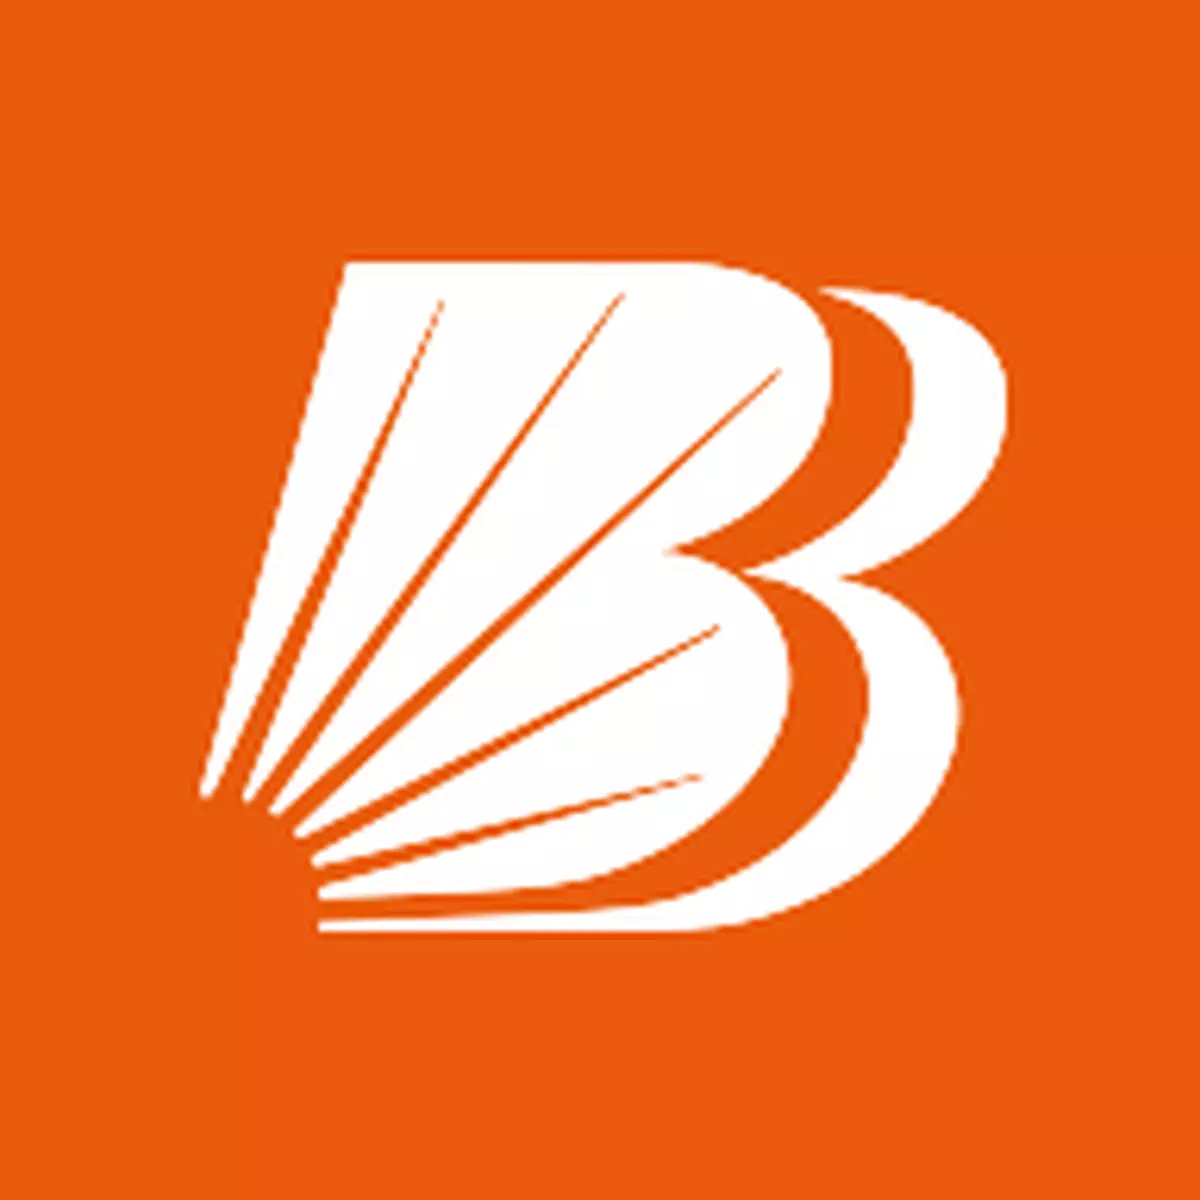 മൊബൈല്‍ ആപ്പ് വിഷയത്തില്‍ 60 പേരെ സസ്പെന്‍ഡ് ചെയ്ത് ബാങ്ക് ഓഫ് ബറോഡ | World  App issue: Bank of Baroda suspends 60 employees